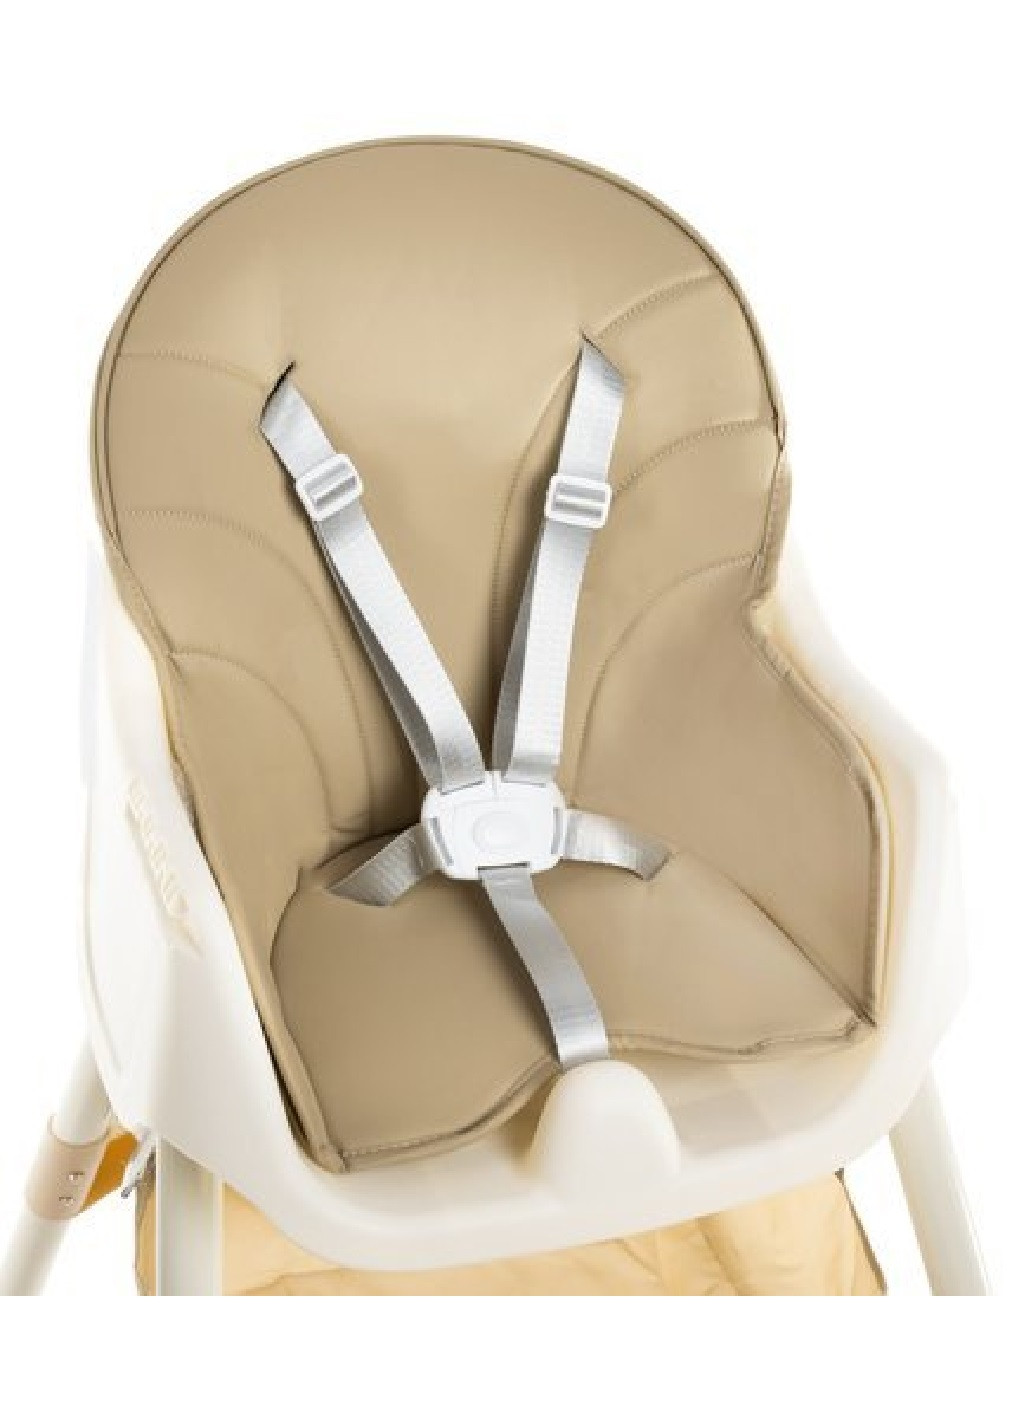 Детское кресло стульчик разборное компактное для кормления детей малышей 3 в 1 с подносом (474761-Prob) Бежевое Unbranded (259644296)